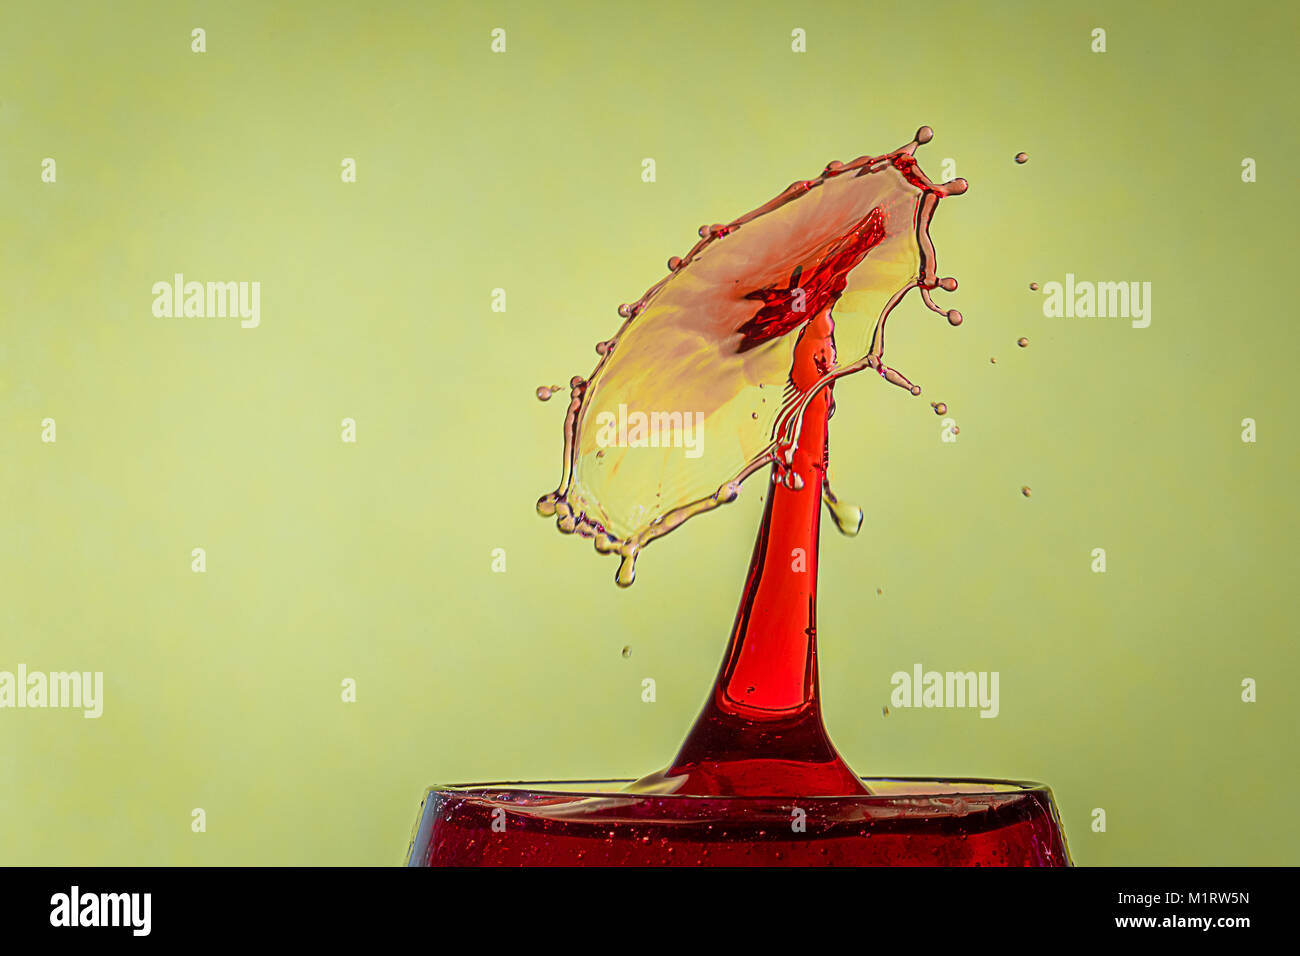 Schließen Sie herauf Bild von einen Wassertropfen von einer roten Flüssigkeit Kollision bilden eine Spritzwasser Kunst gegen einen Baum Hintergrund Stockfoto